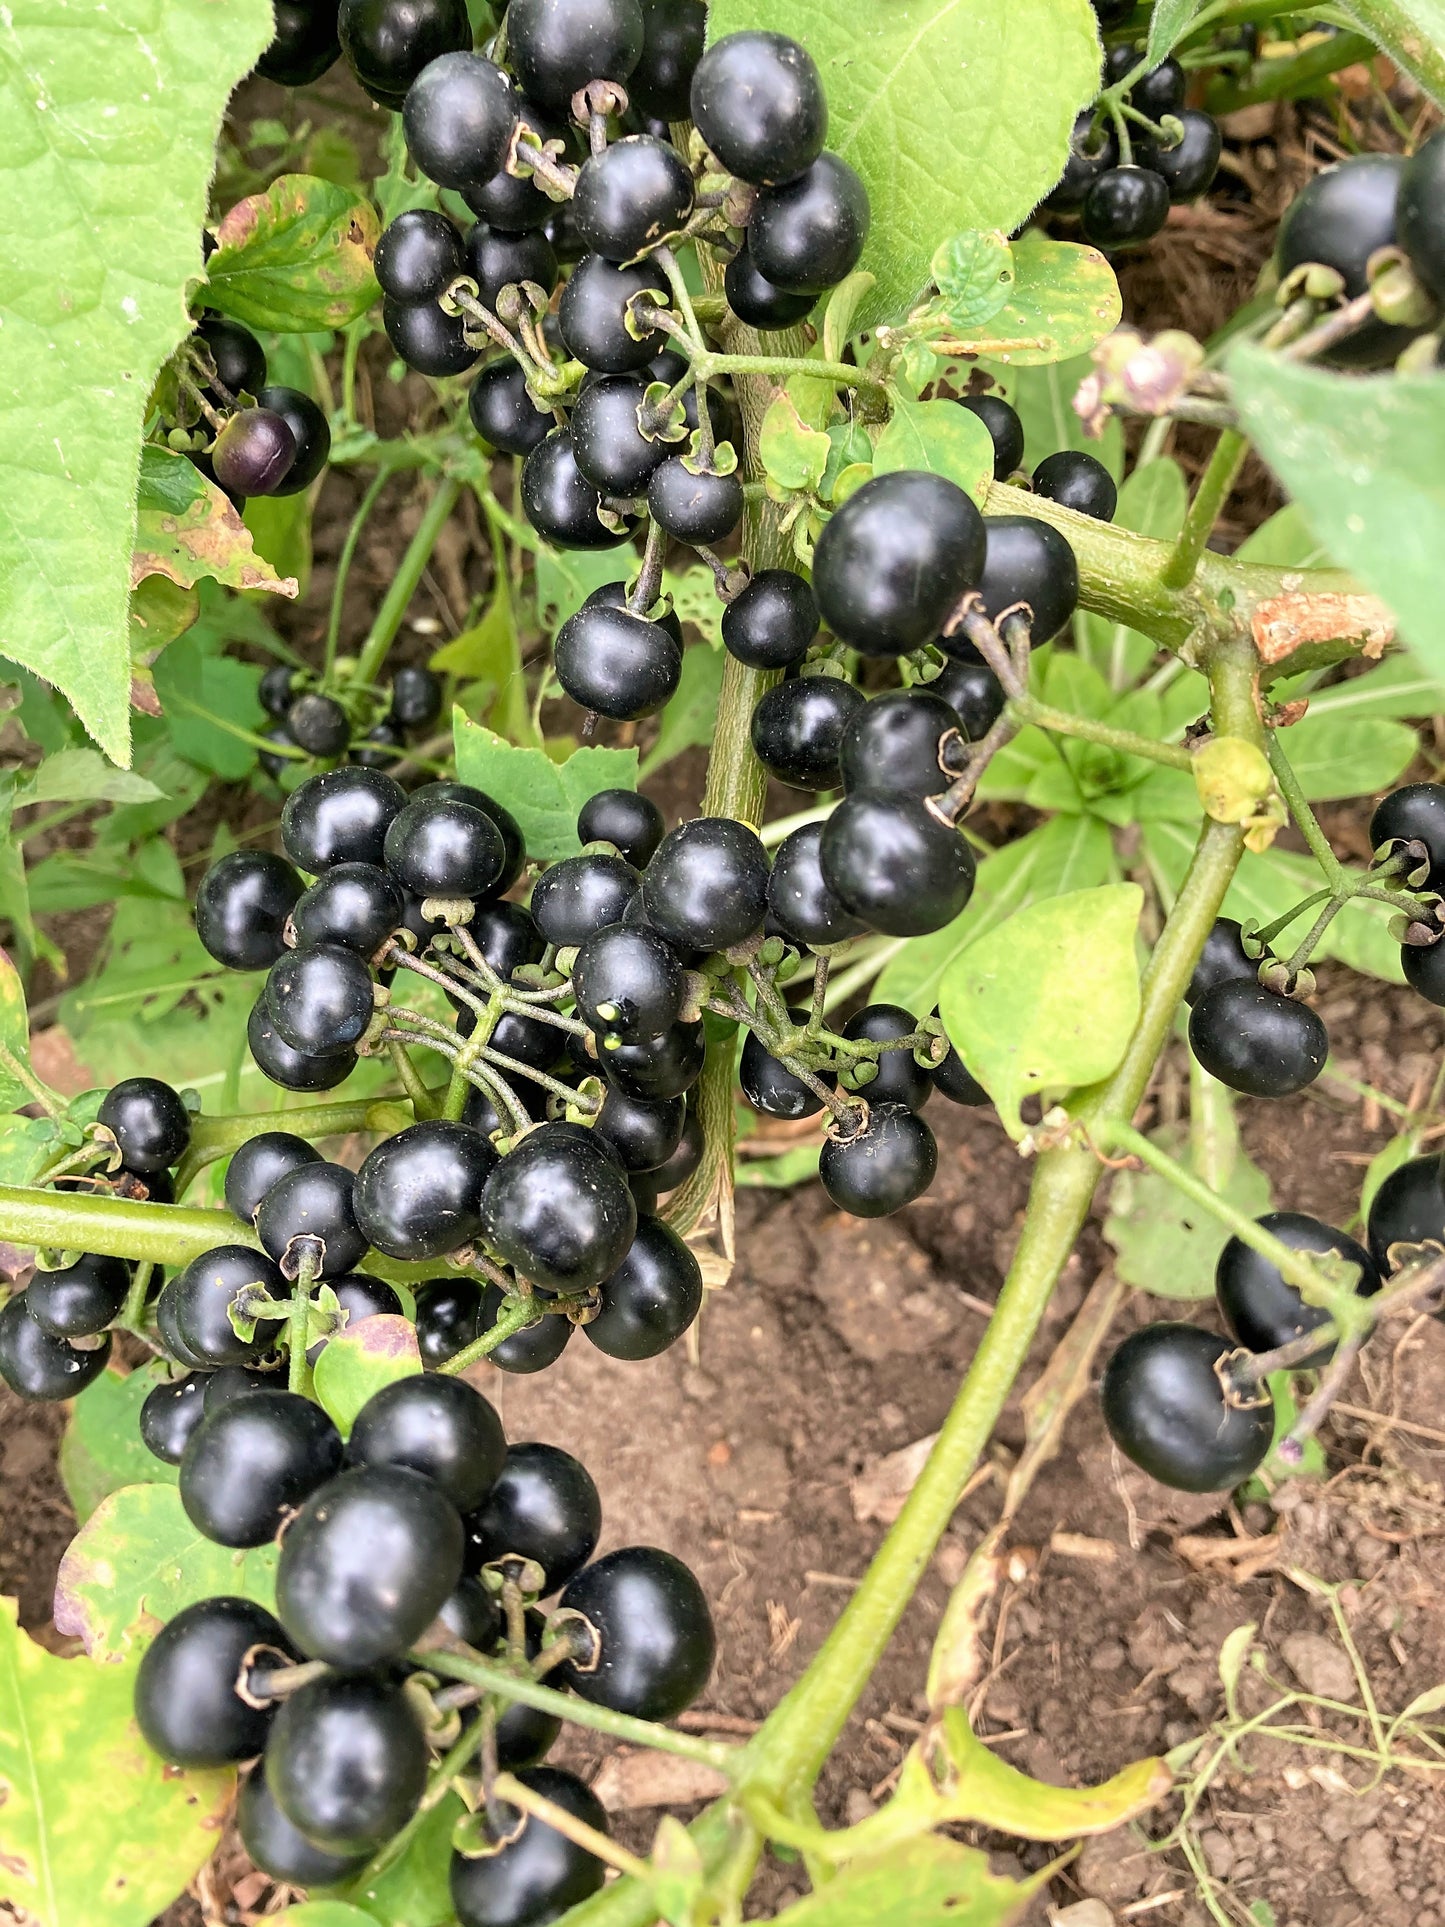 100 WONDERBERRY aka Sunberry Solanum Burbankii Retroflexum Fruit Berry Shrub Seeds